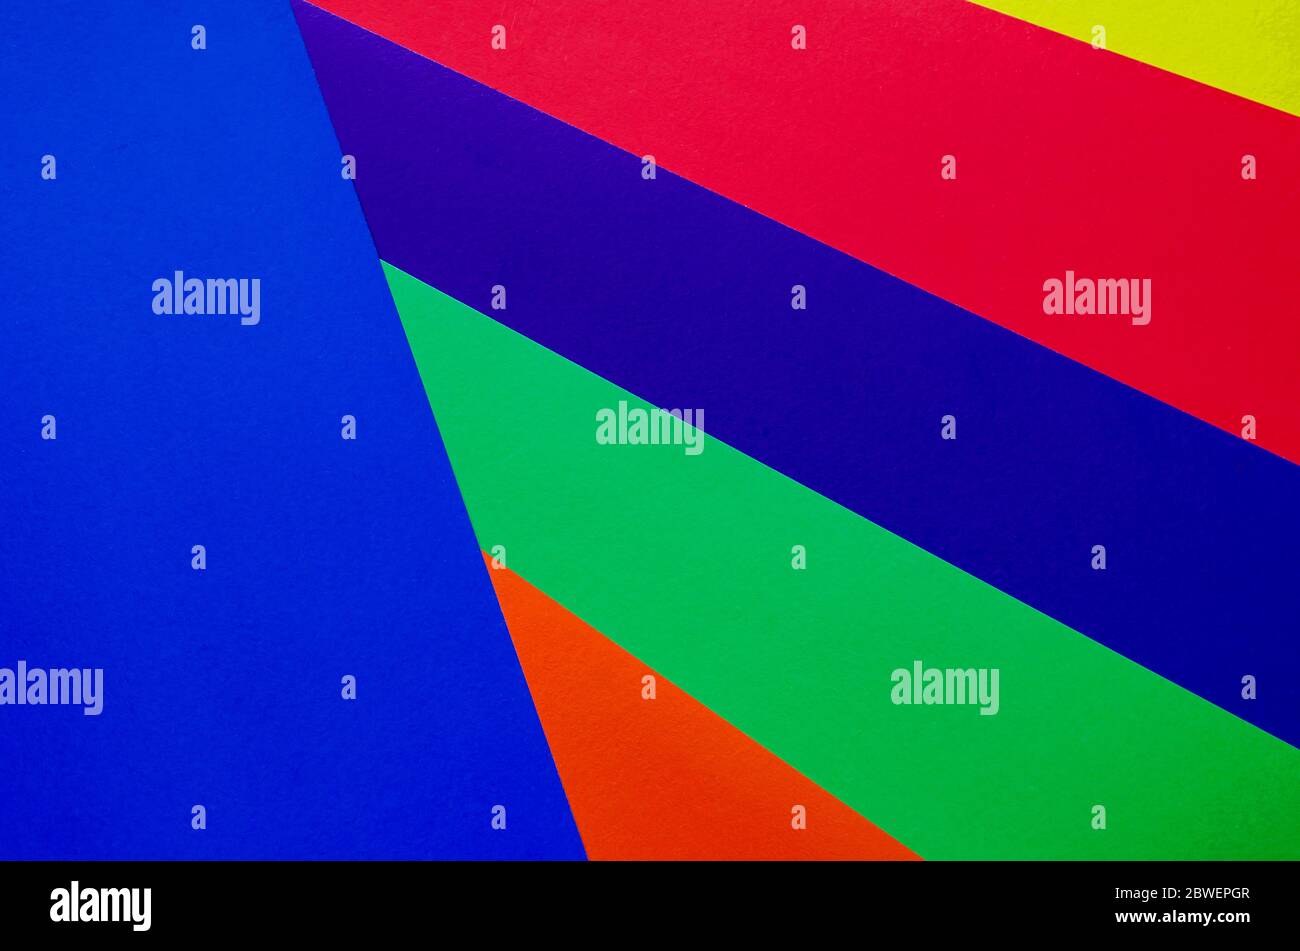 Mehrfarbiger Papierhintergrund. Papierbögen in Regenbogenfarben Nahaufnahme. Geometrischer Multitasking-Hintergrund. Platz für Text. Blick von oben. Stockfoto